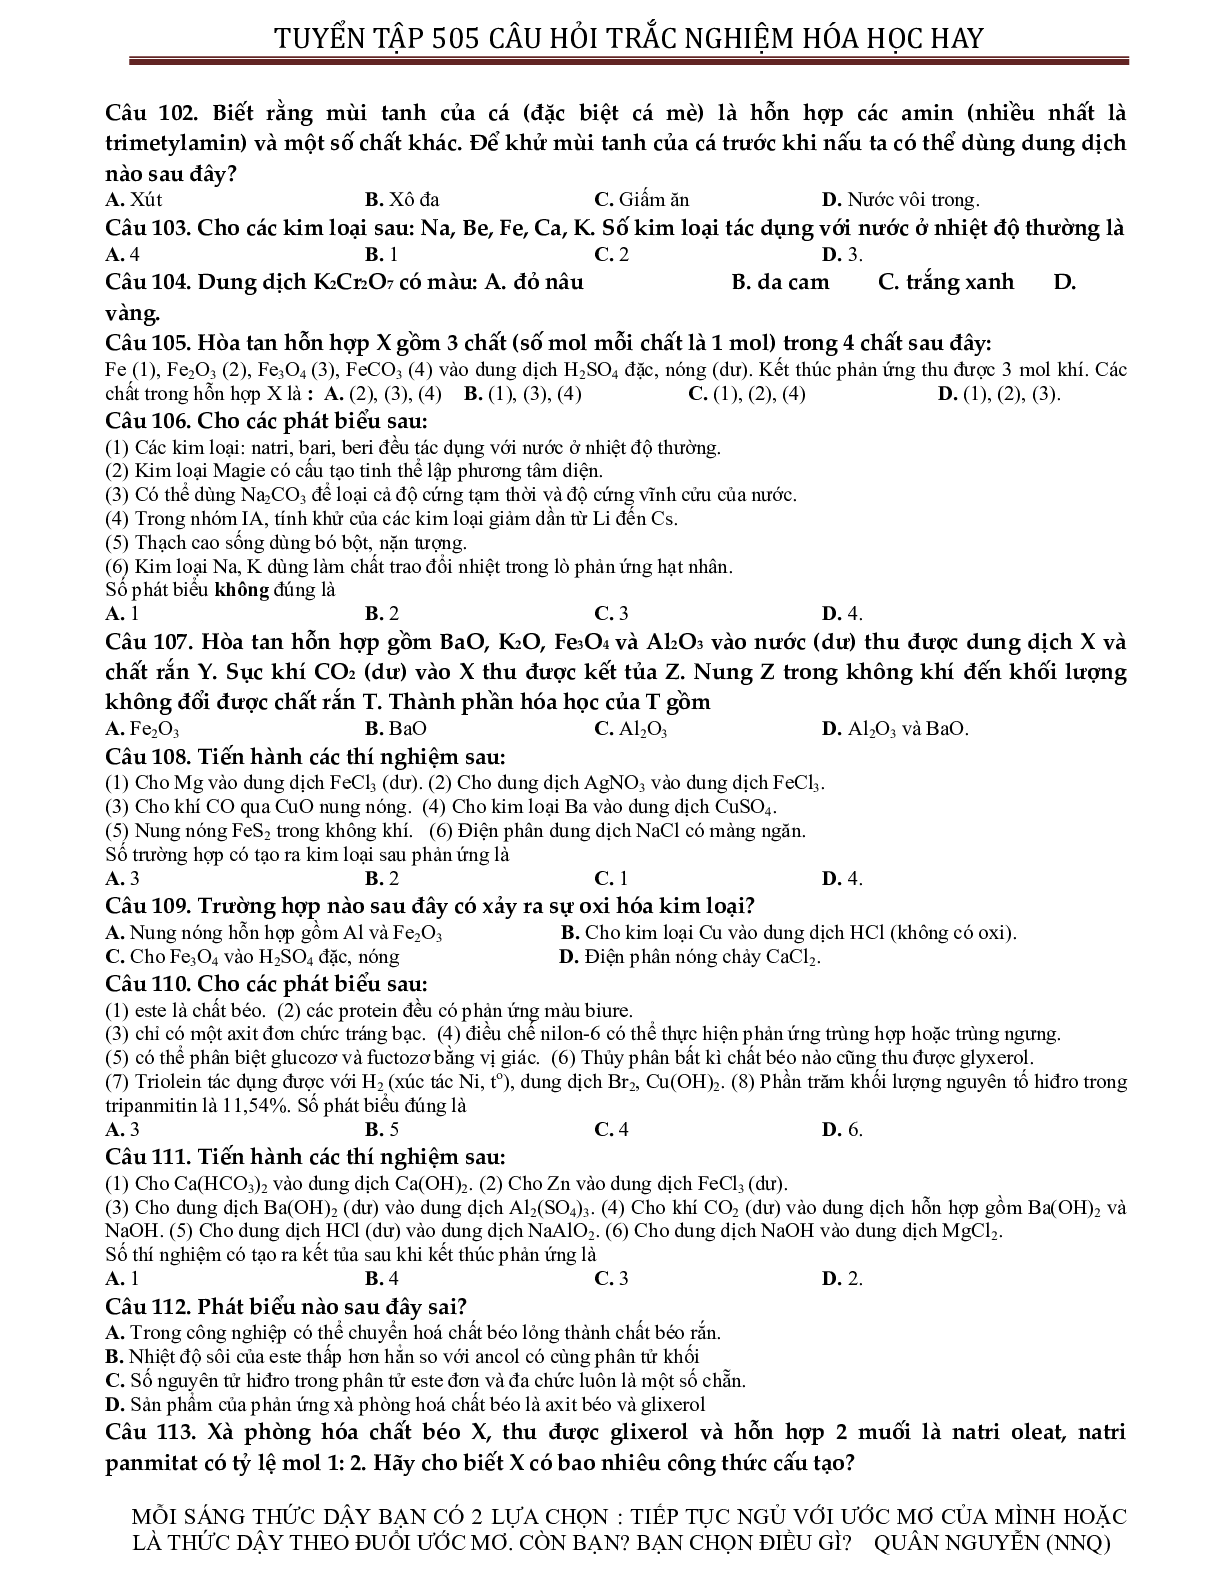 Tuyển chọn 505 câu hỏi lí thuyết trắc nghiệm hóa học 12 có đáp án, chọn lọc (trang 9)